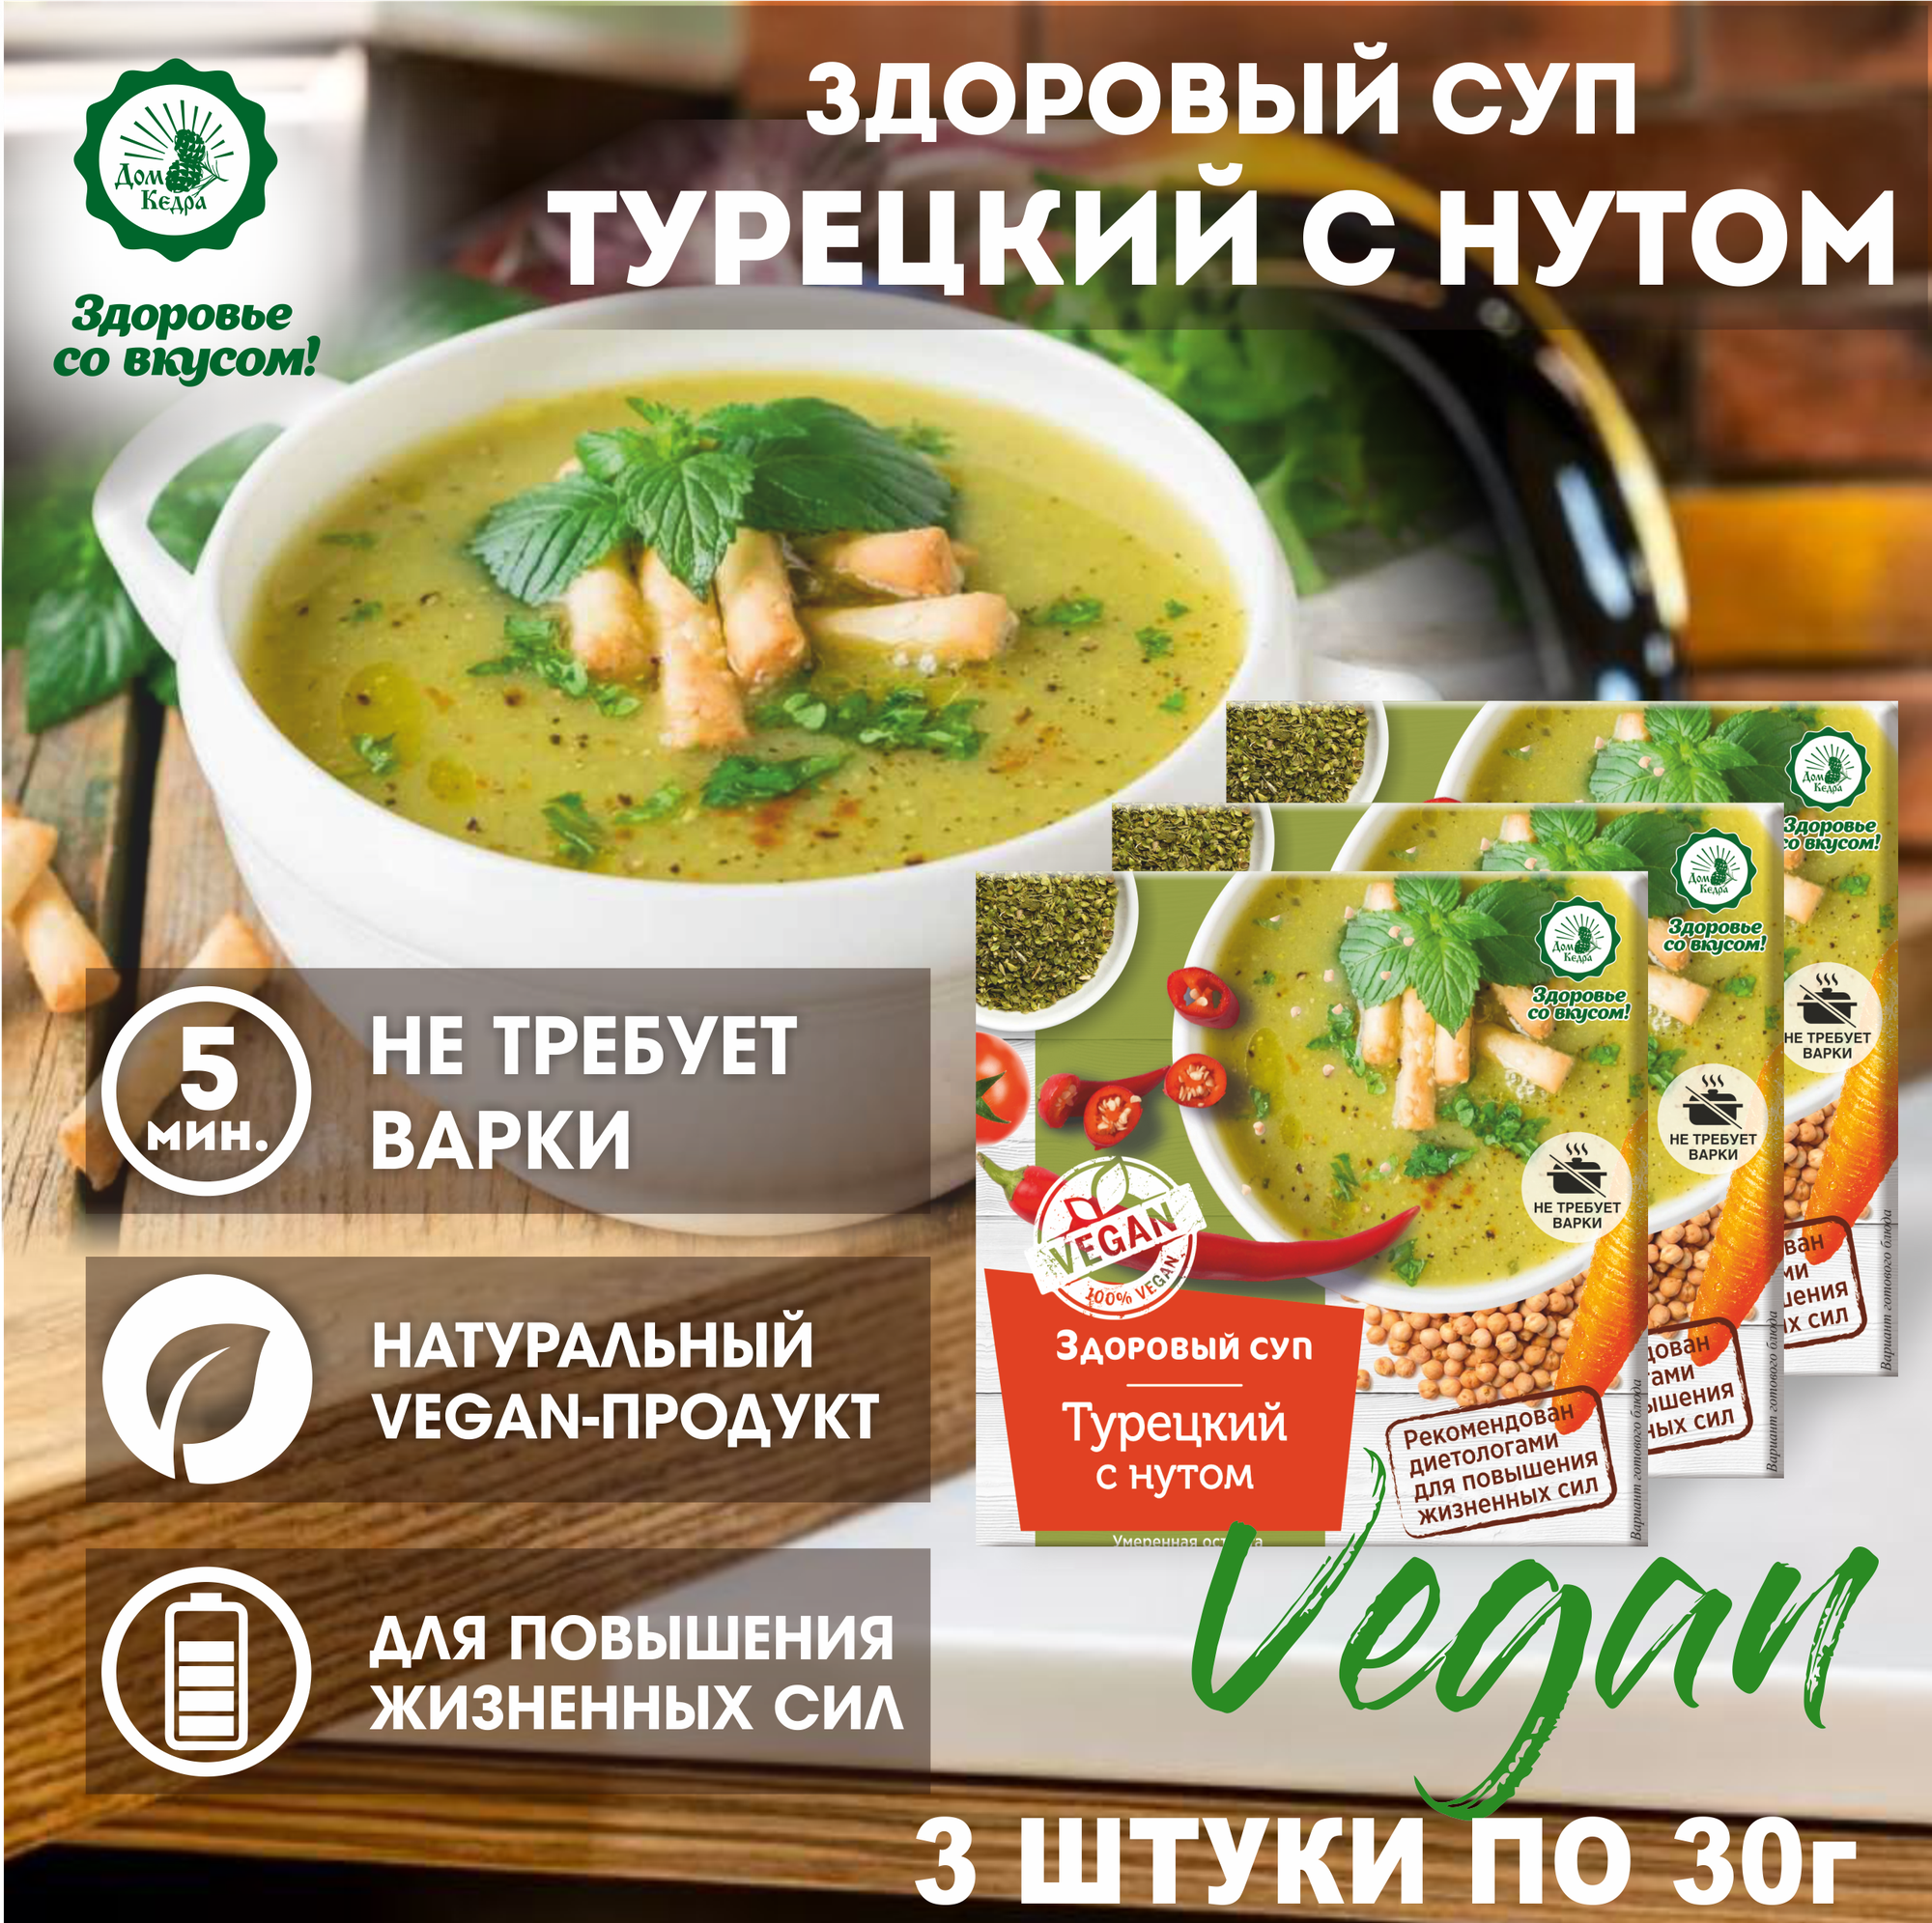 Диетический суп быстрого приготовления "Турецкий" с нутом VEGAN, 3шт